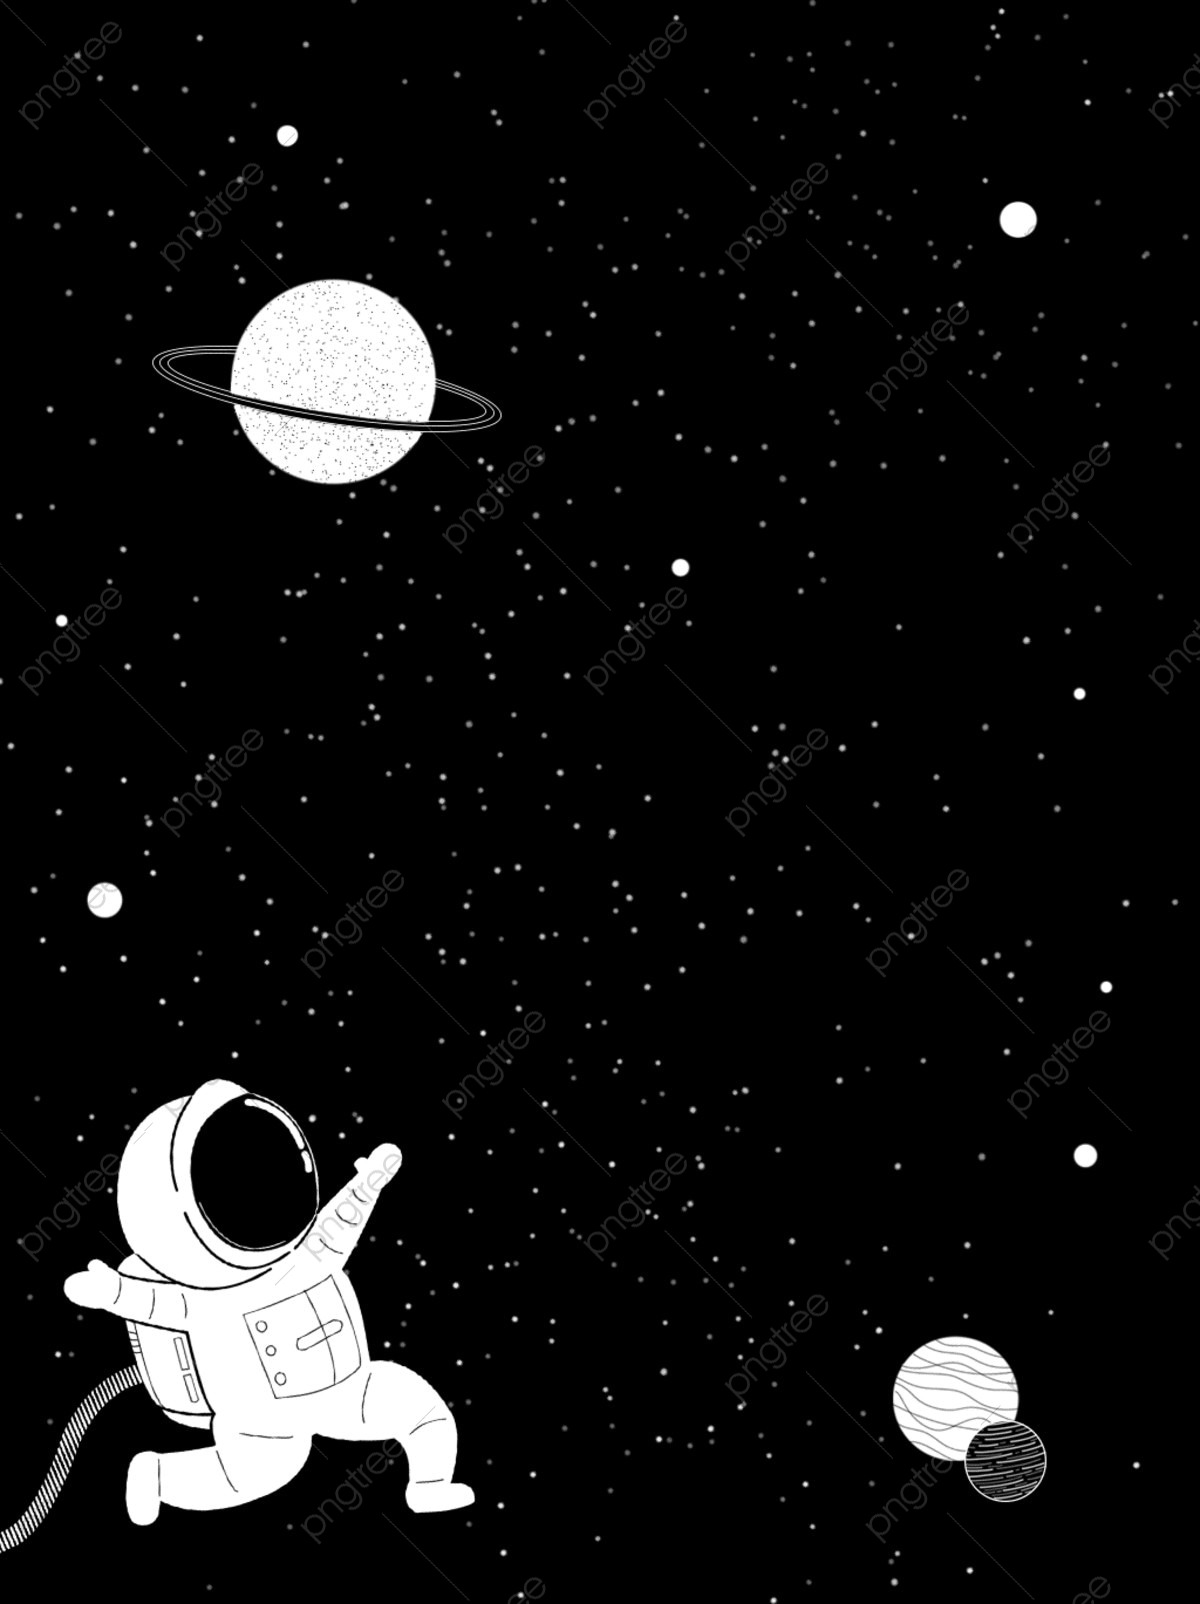 Phi hành gia là những nhà cố vấn tuyệt vời của con người, với sự dũng cảm và trí tuệ của họ, chúng ta đã khám phá được nhiều bí ẩn của không gian và hiểu rõ hơn về Vũ trụ.